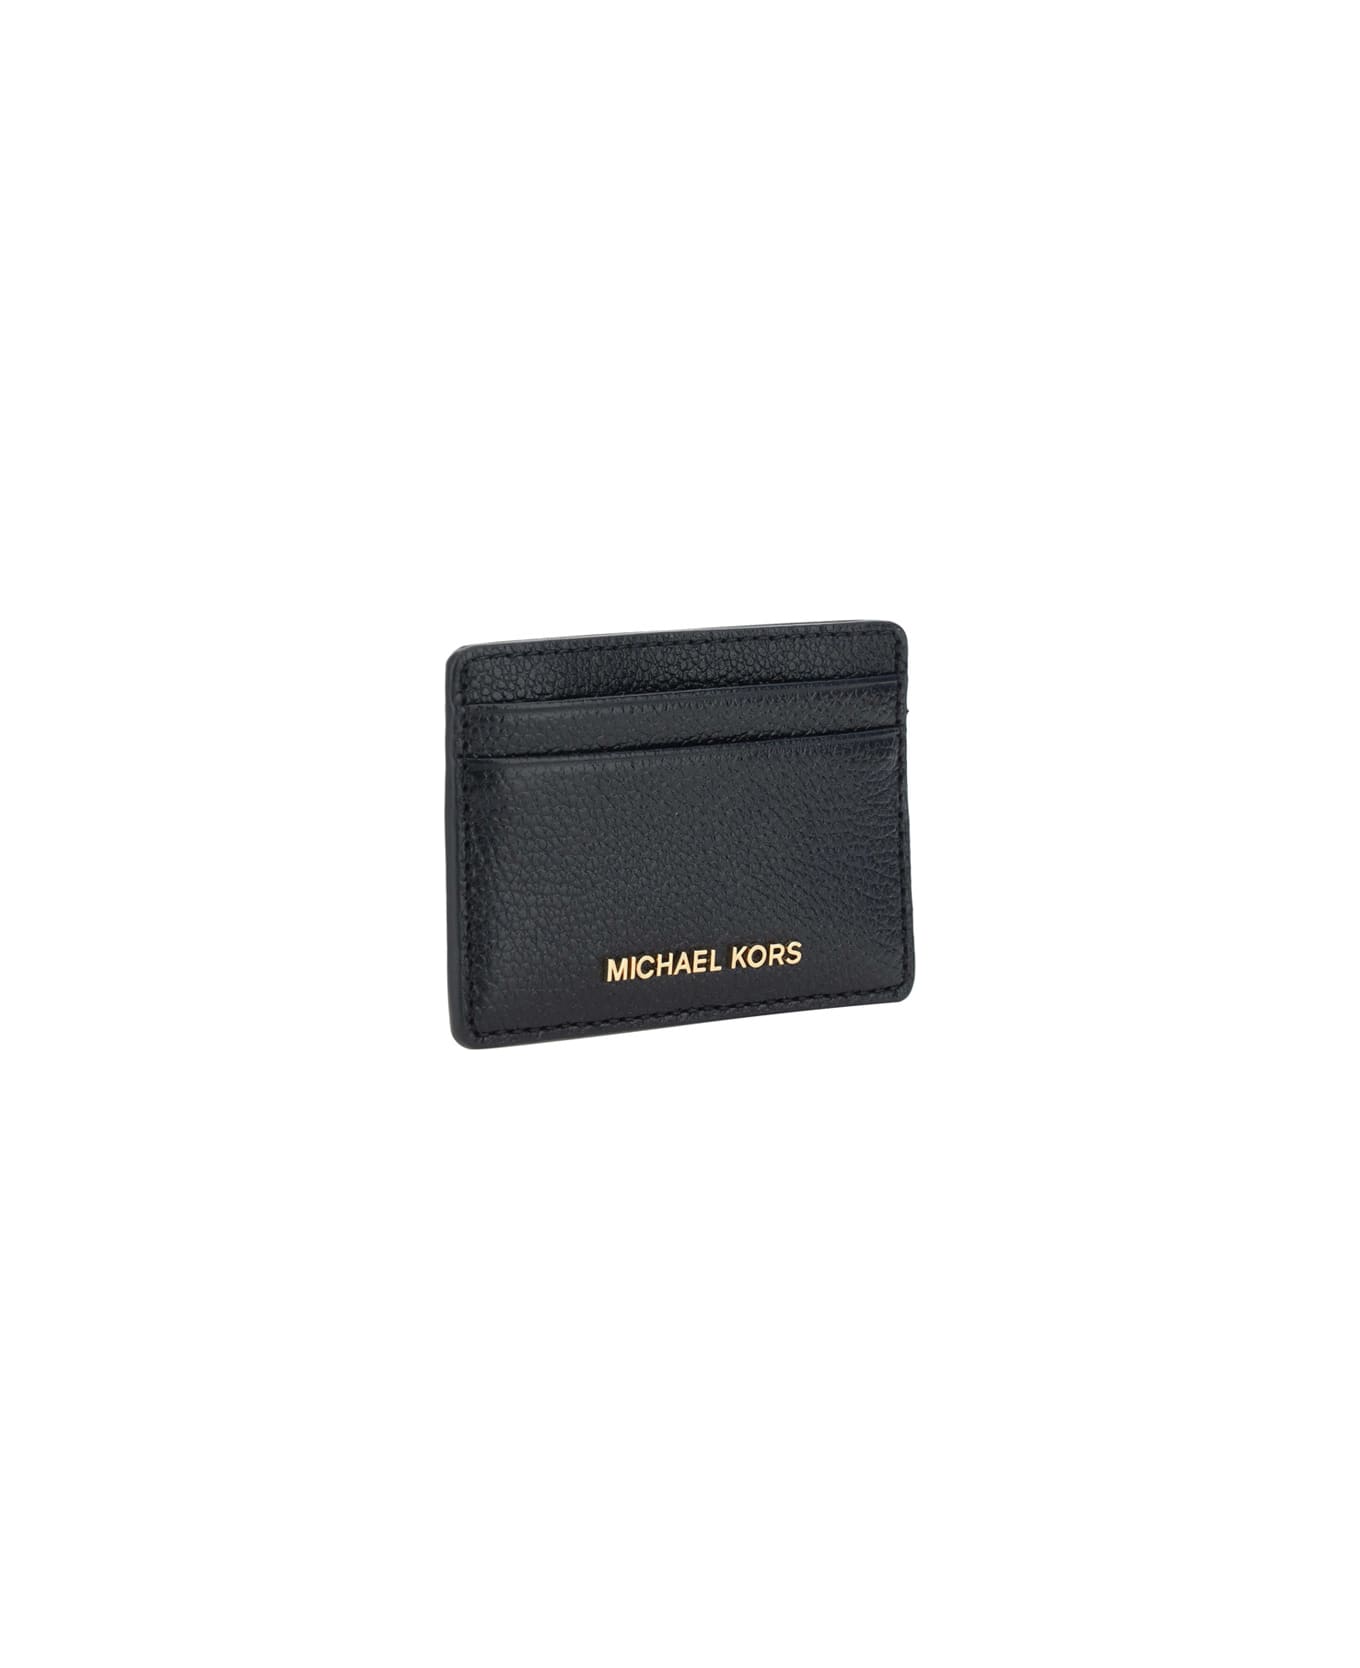 Michael Kors Jet Set Card Holder - Black